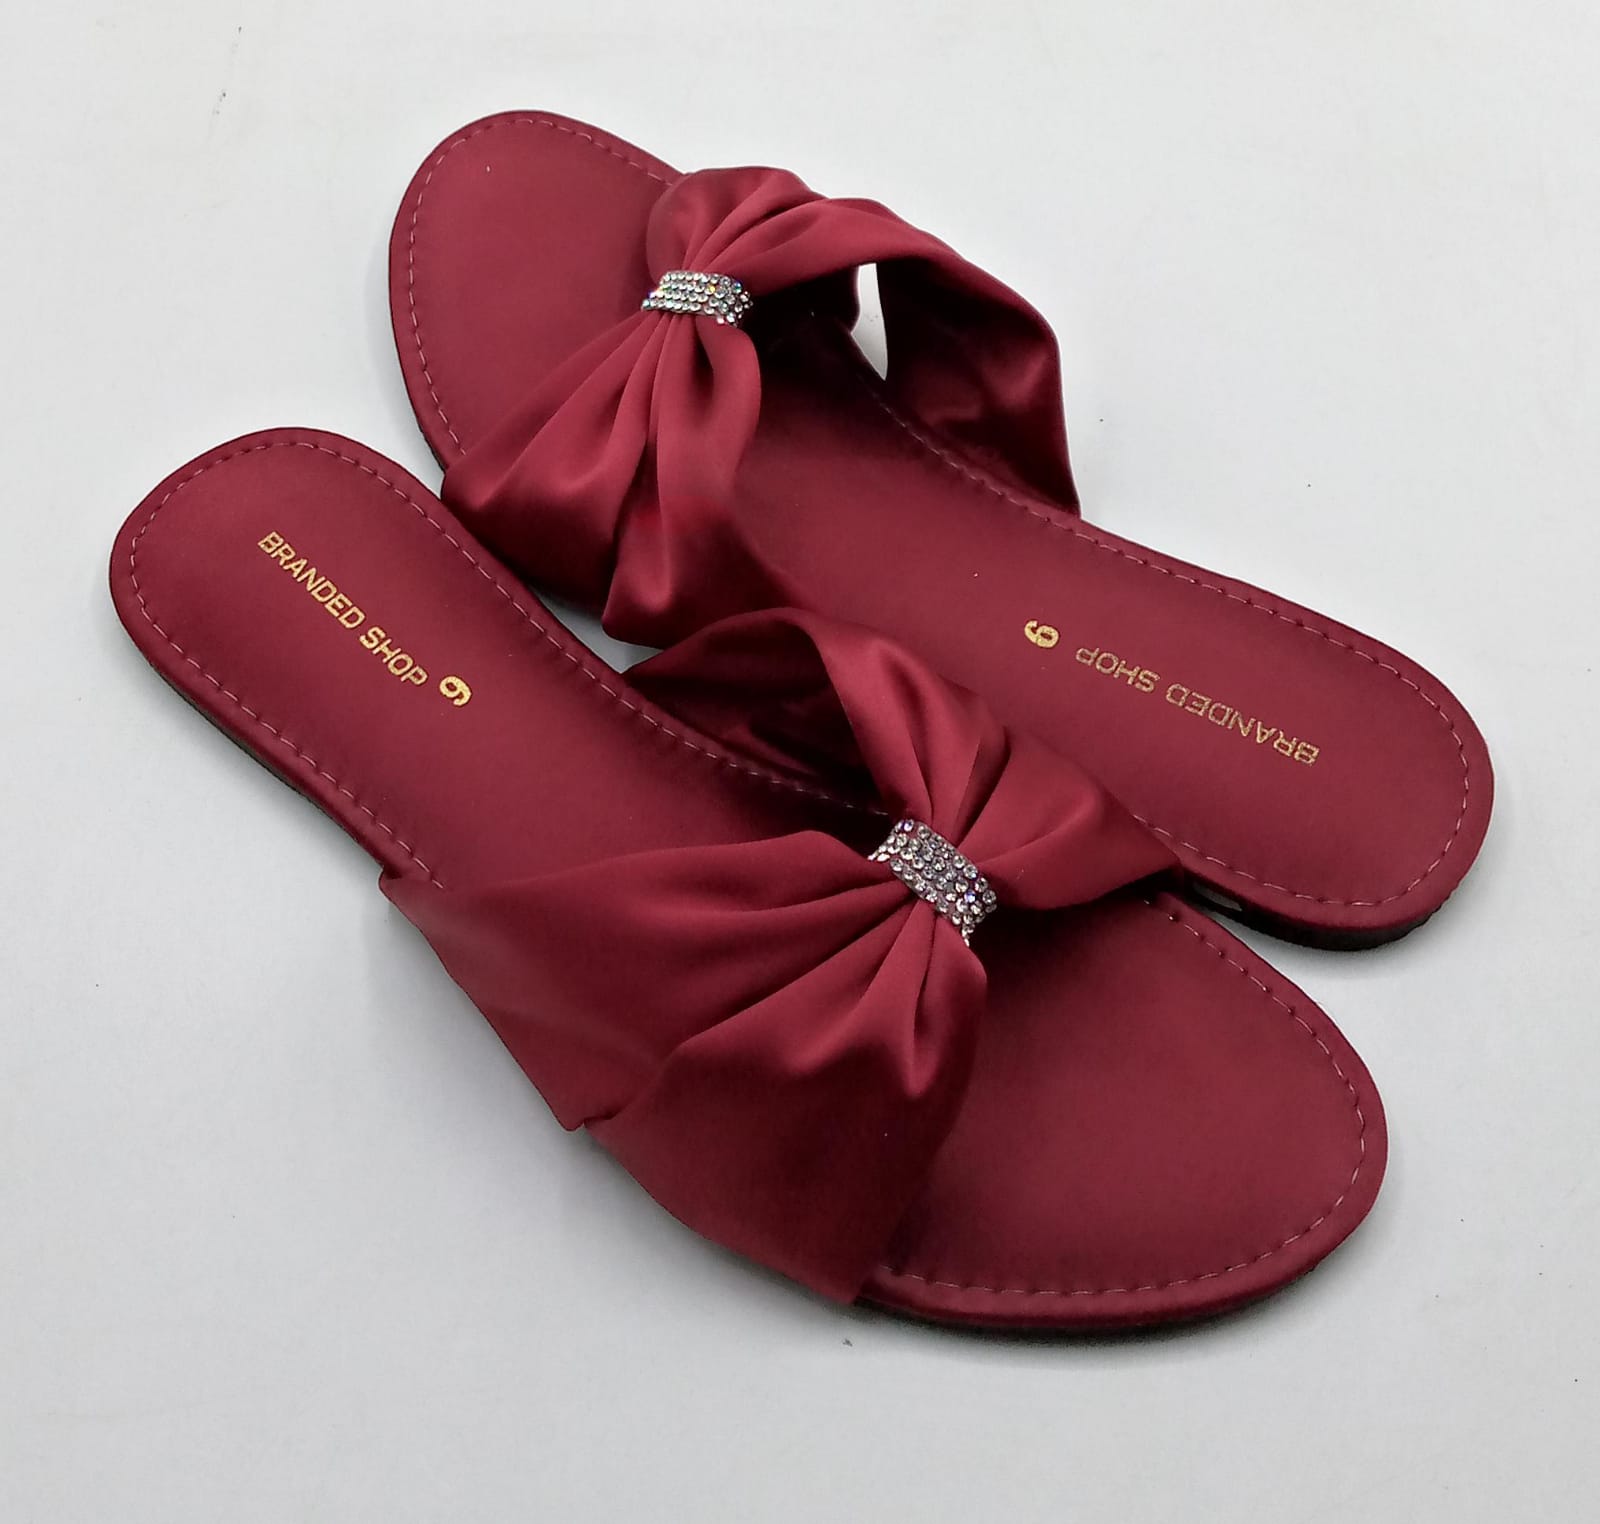 Fancy Slippers For Women - 15